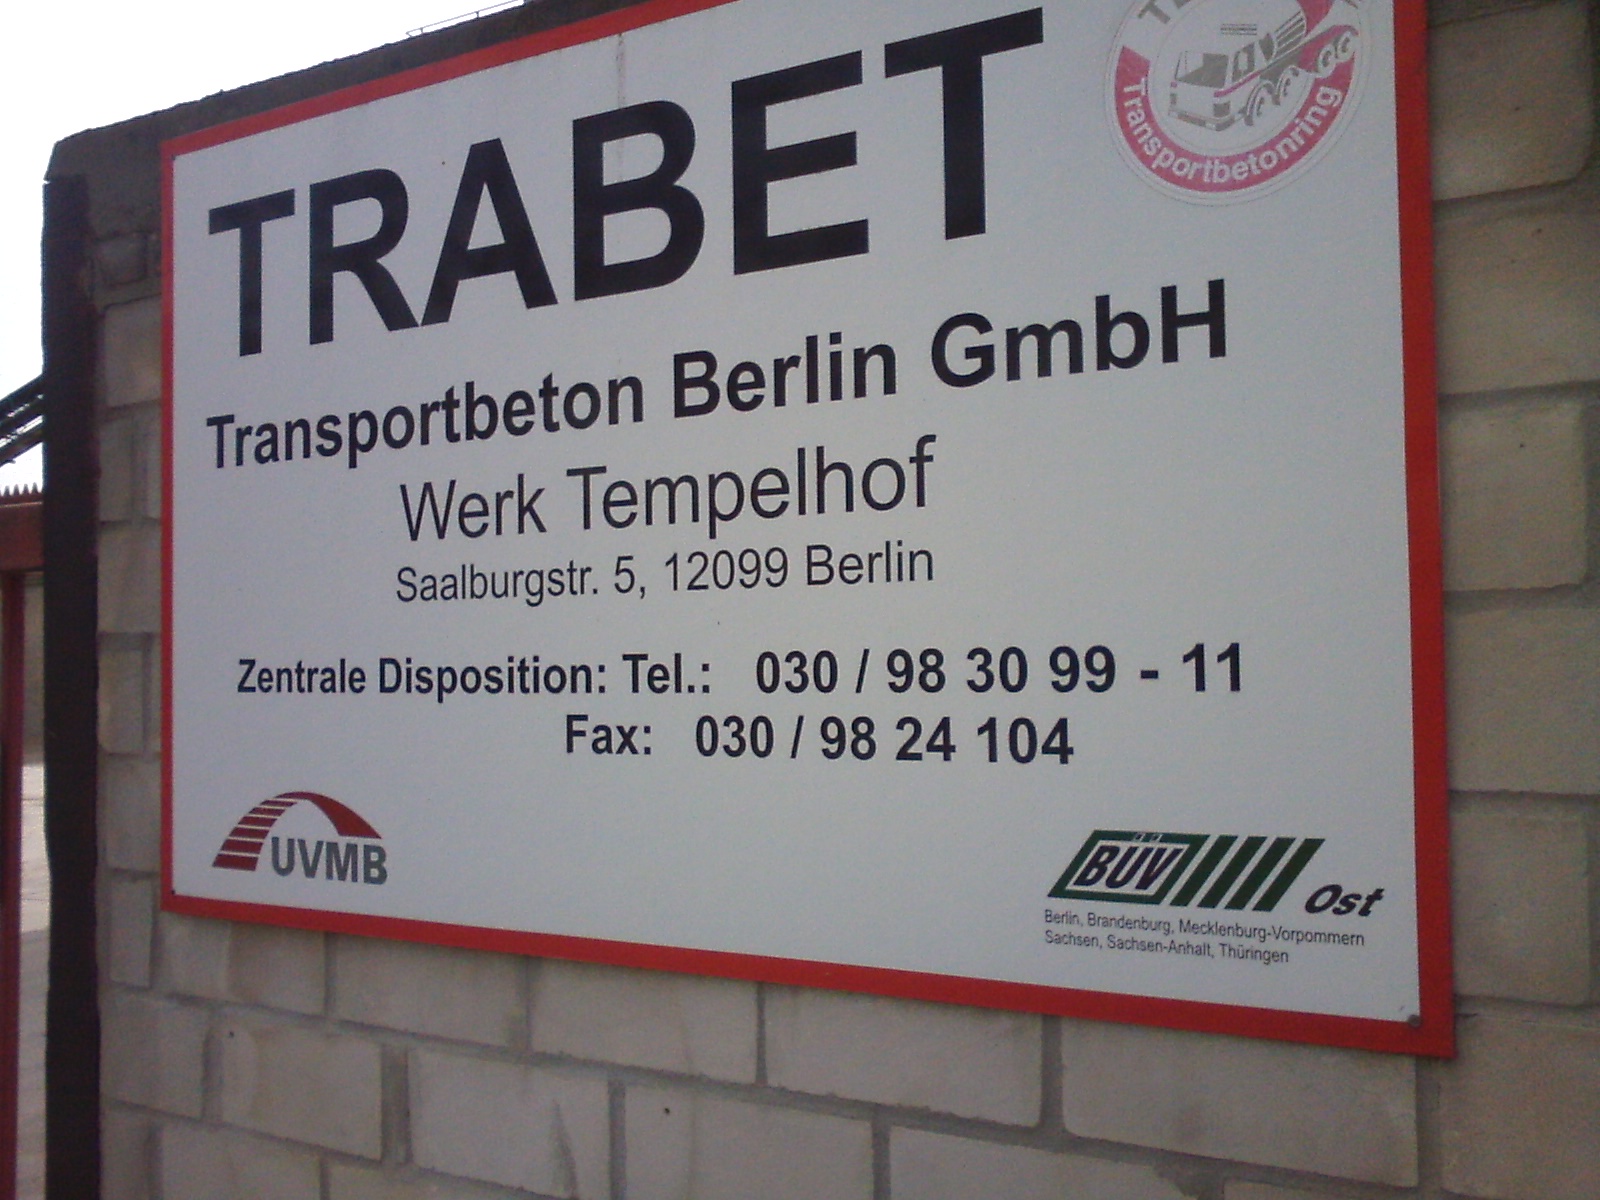 Bild 3 TRABET Transportbeton Berlin GmbH in Berlin